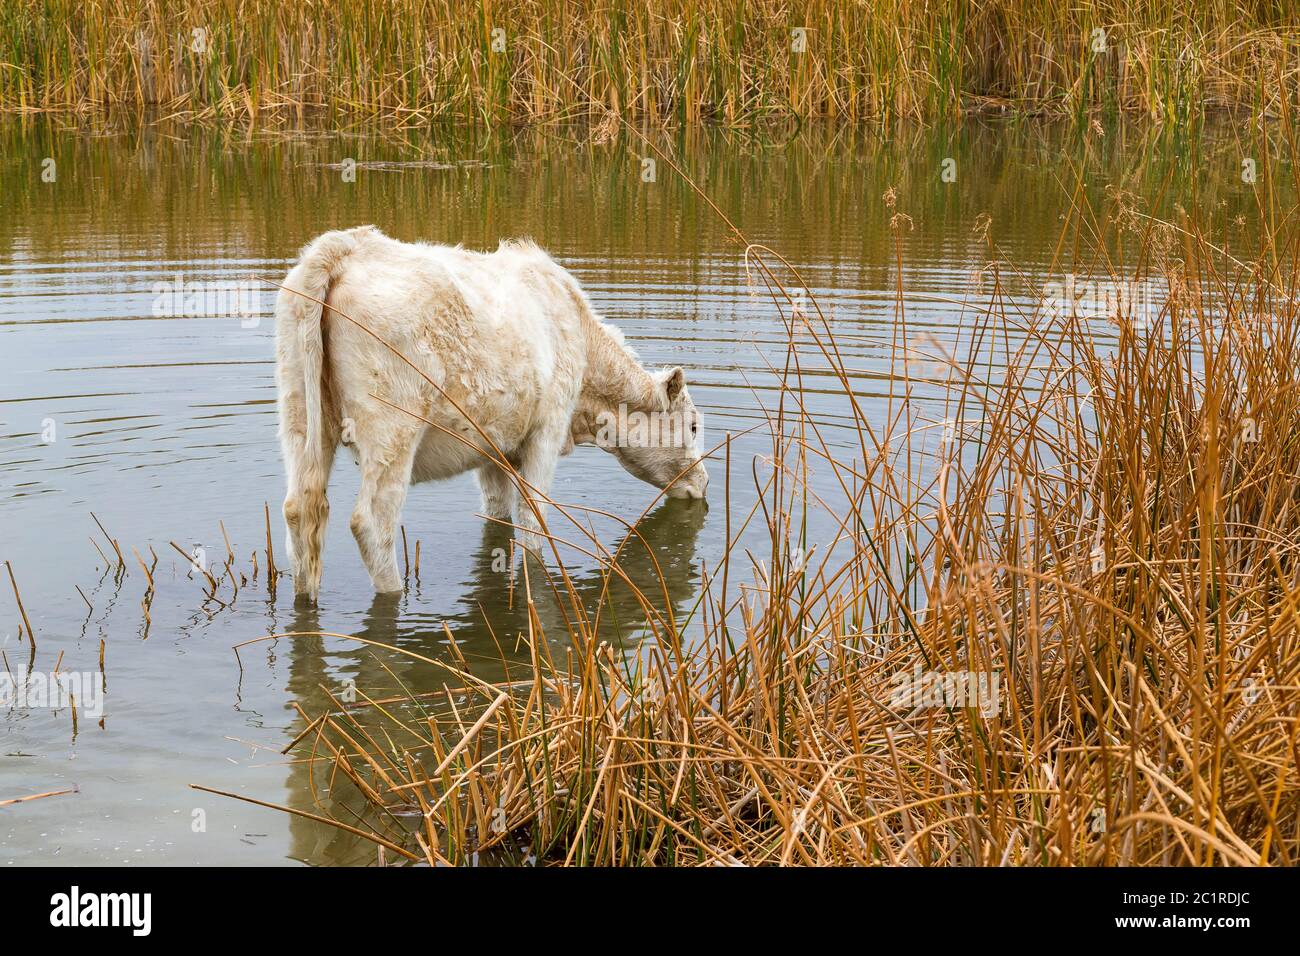 Vaca sedienta bebiendo en un estanque. Foto de stock